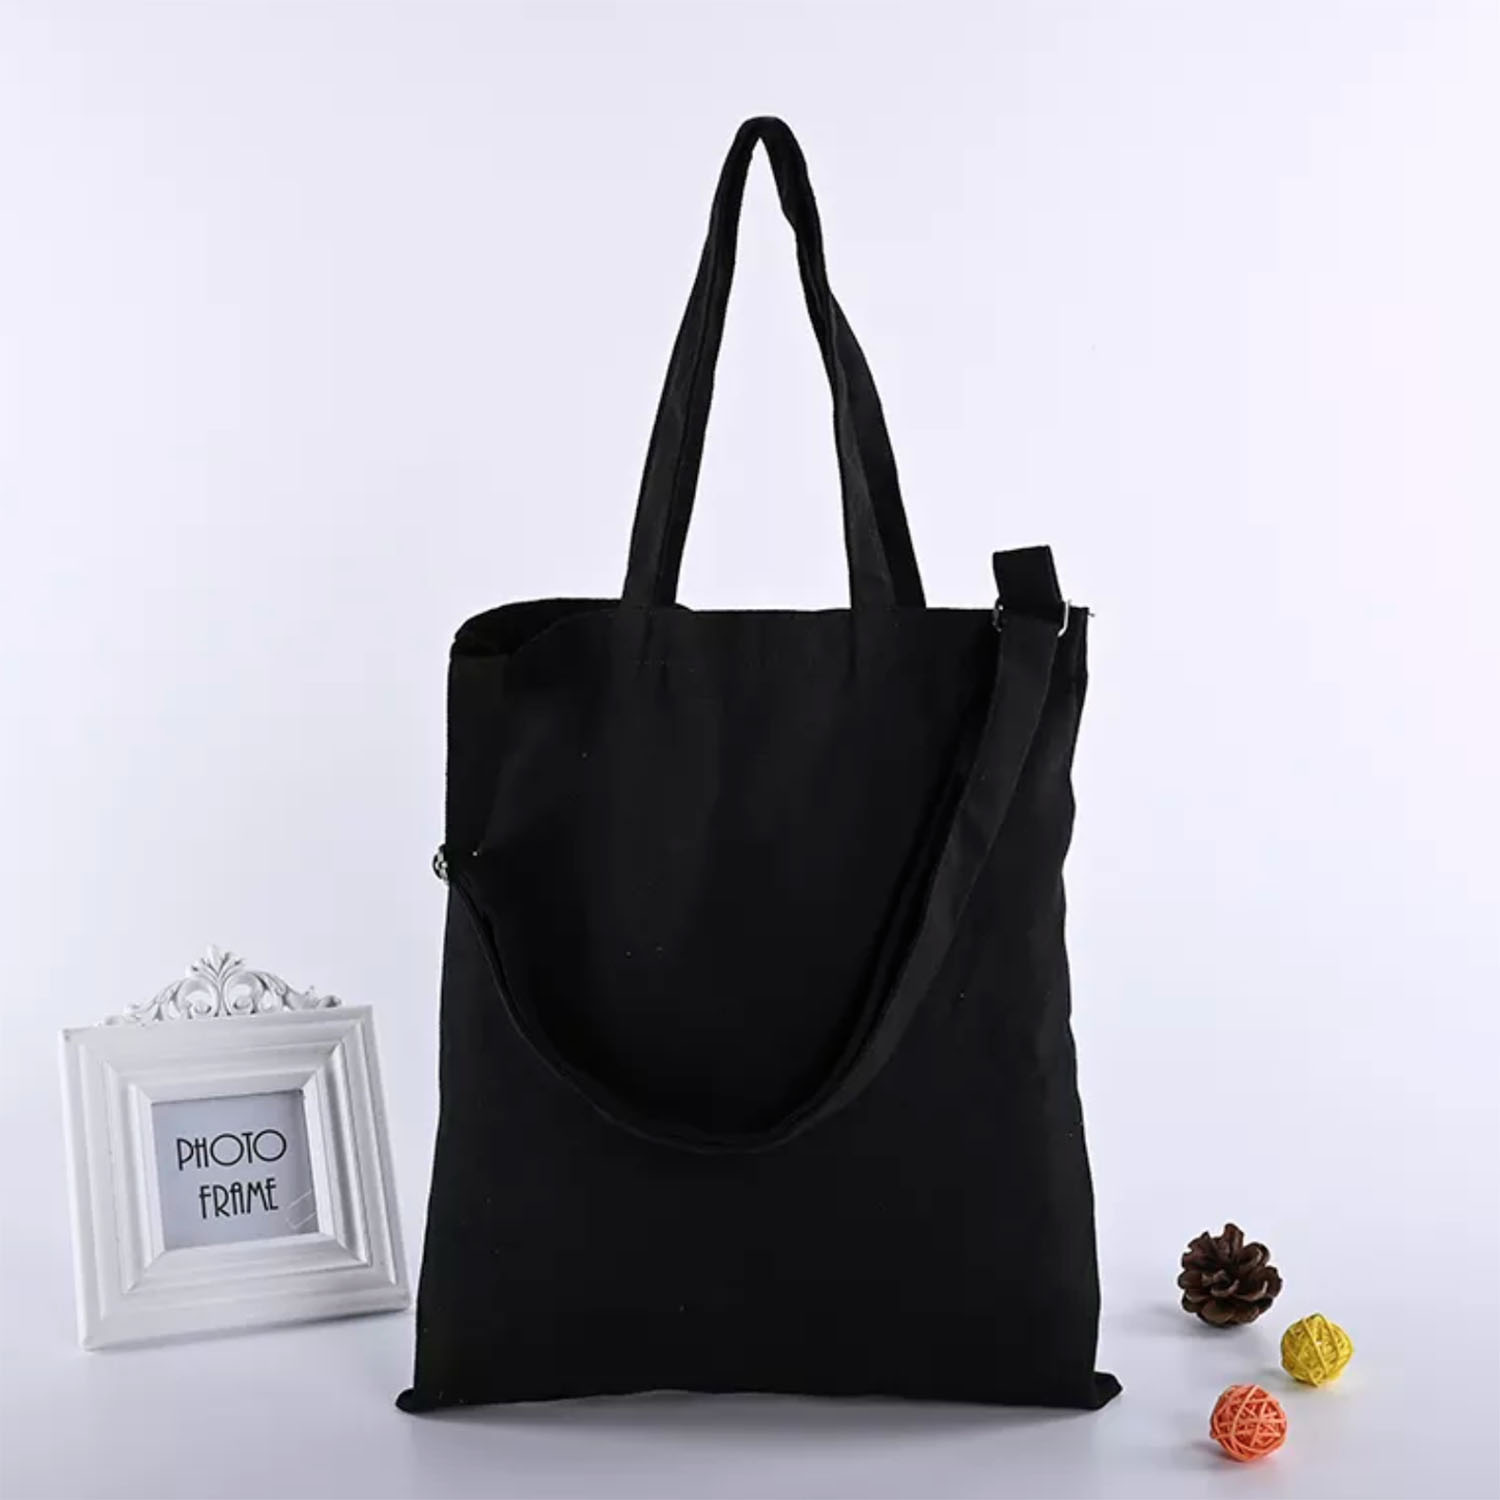 Handbag With Adjustable Shoulder Strap 